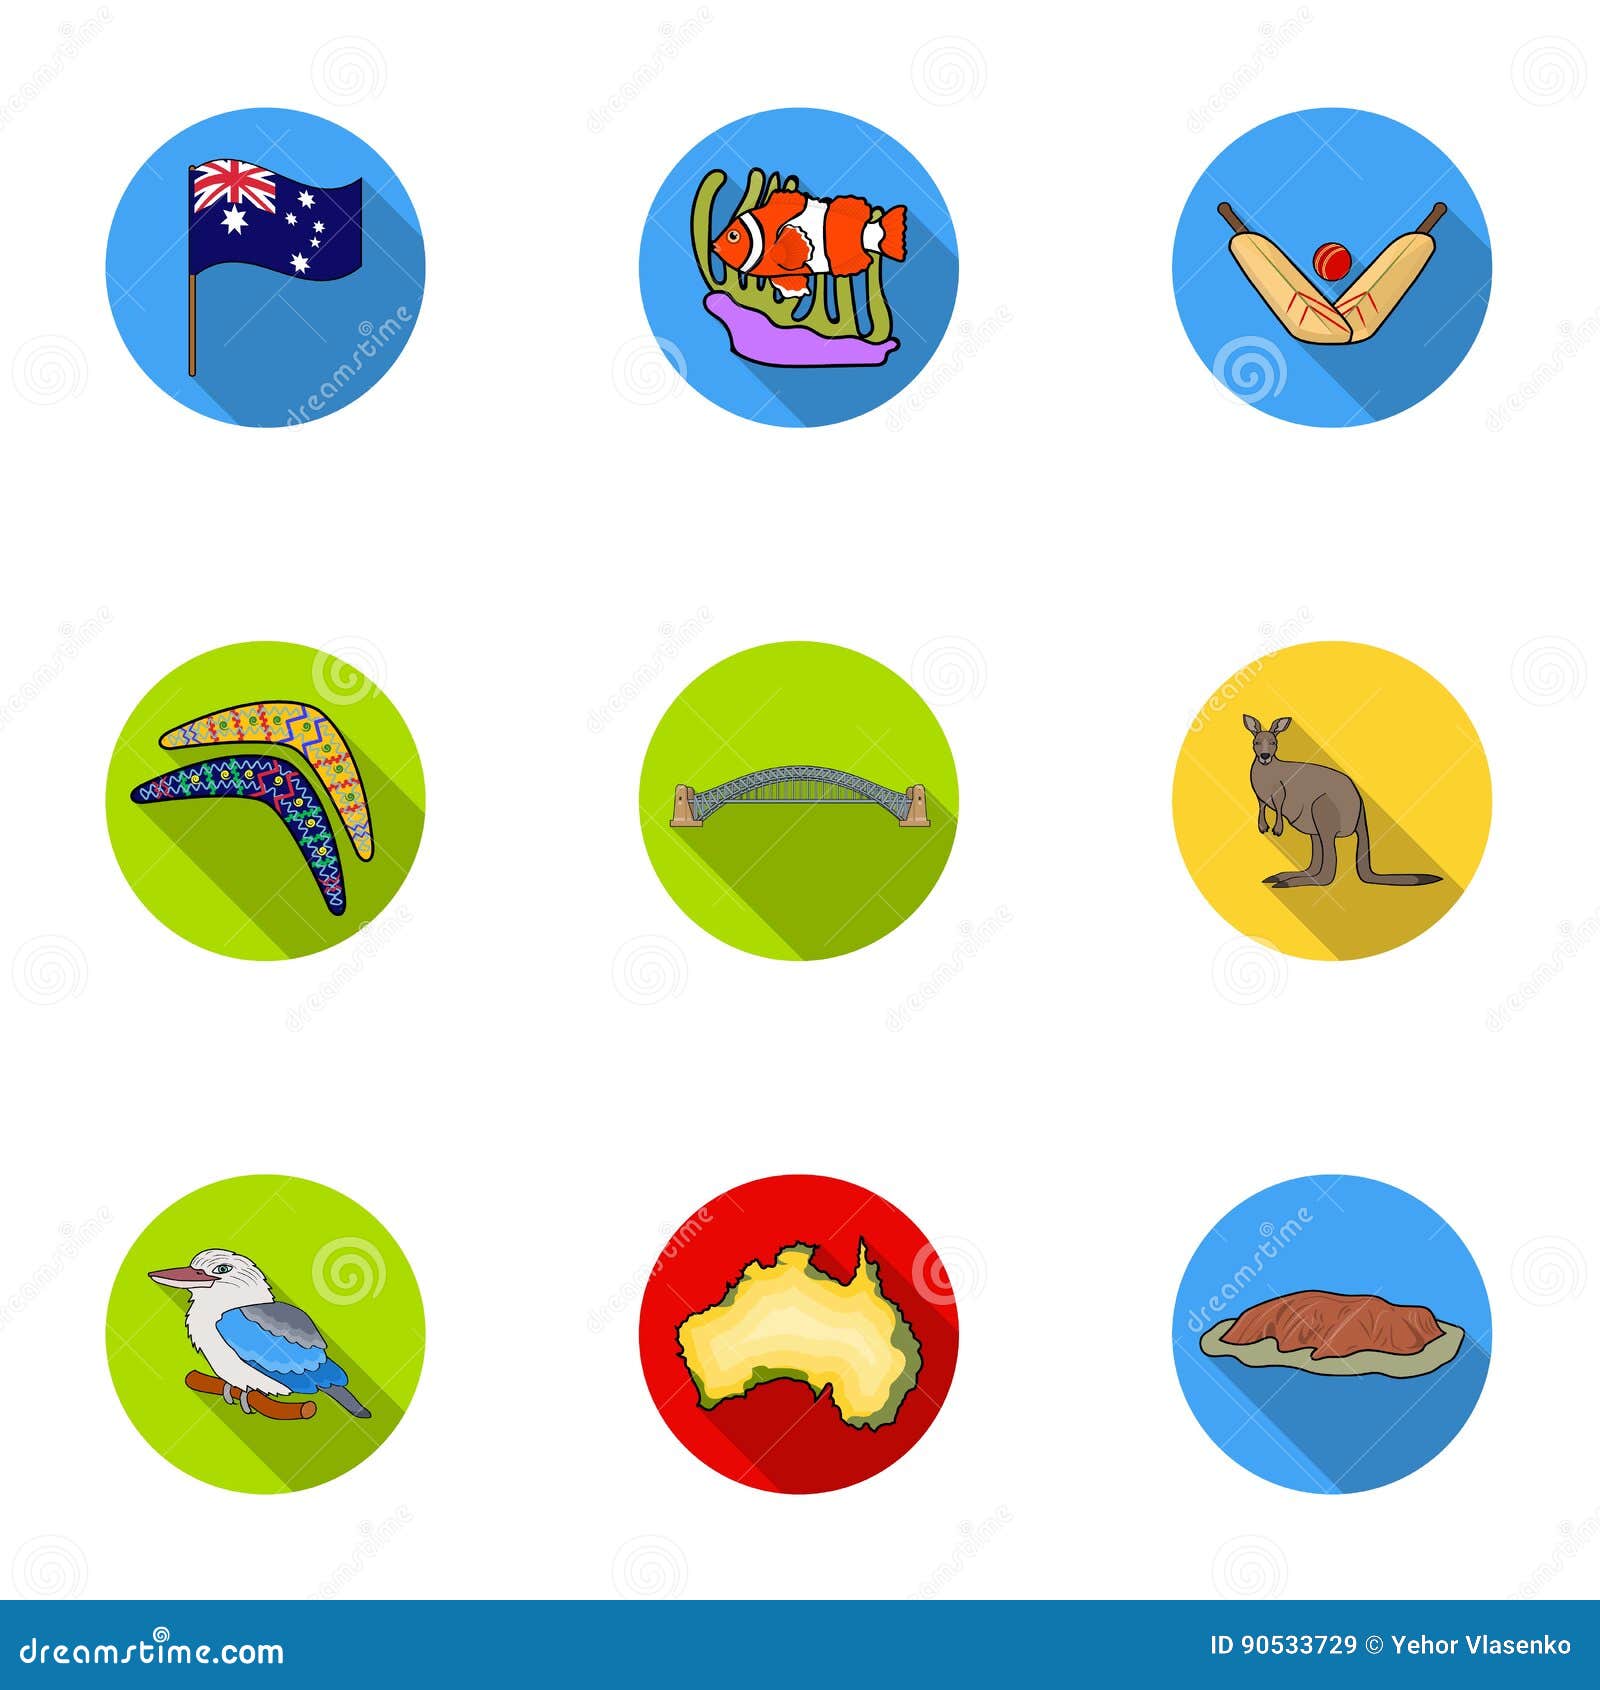 Австралия символы для детей Угадай. Australia symbols. Условные знаки австралии